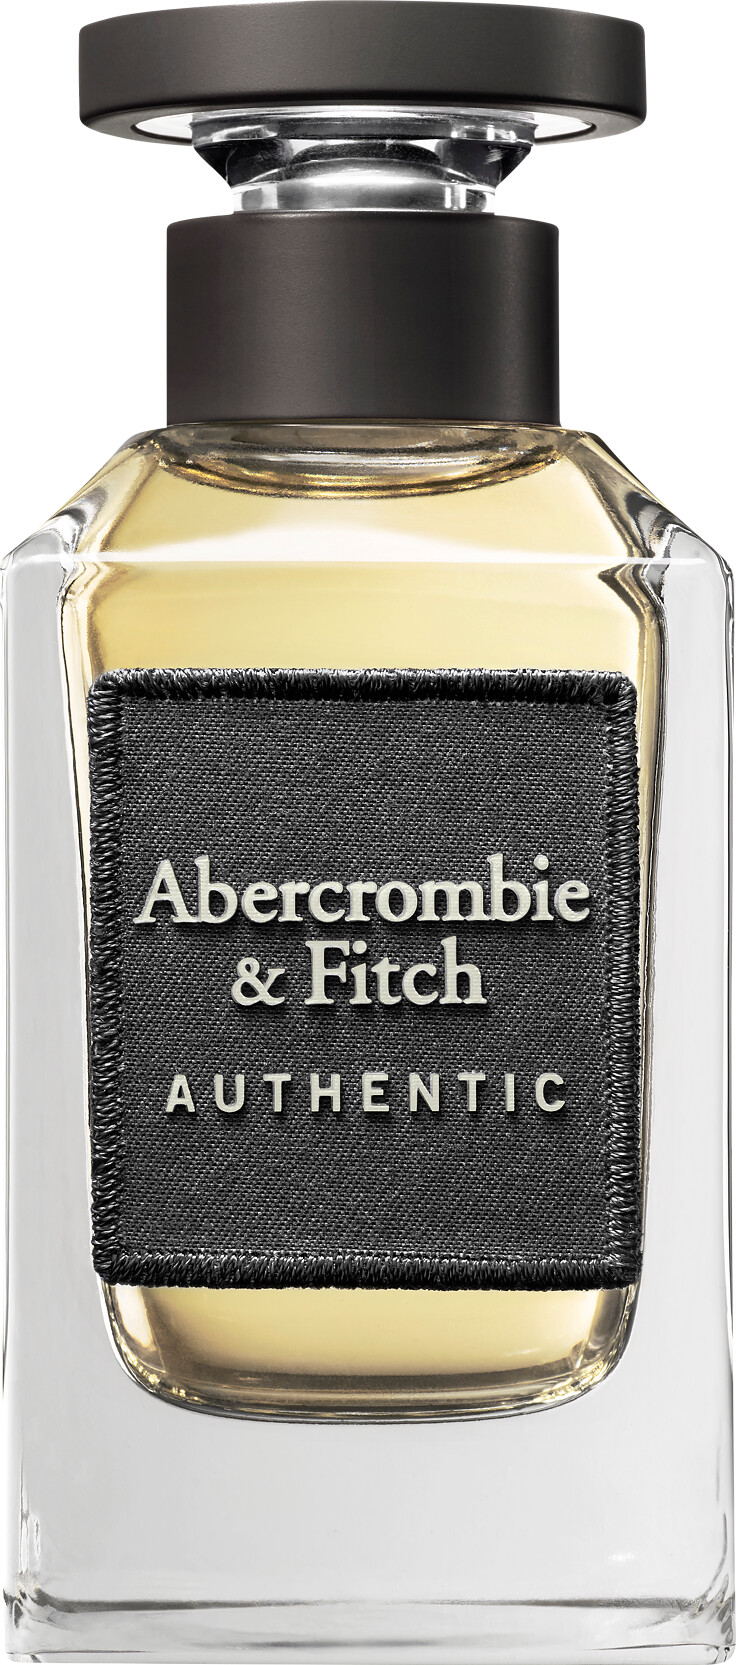 Abercrombie & Fitch Authentic For Men Eau de Toilette Spray